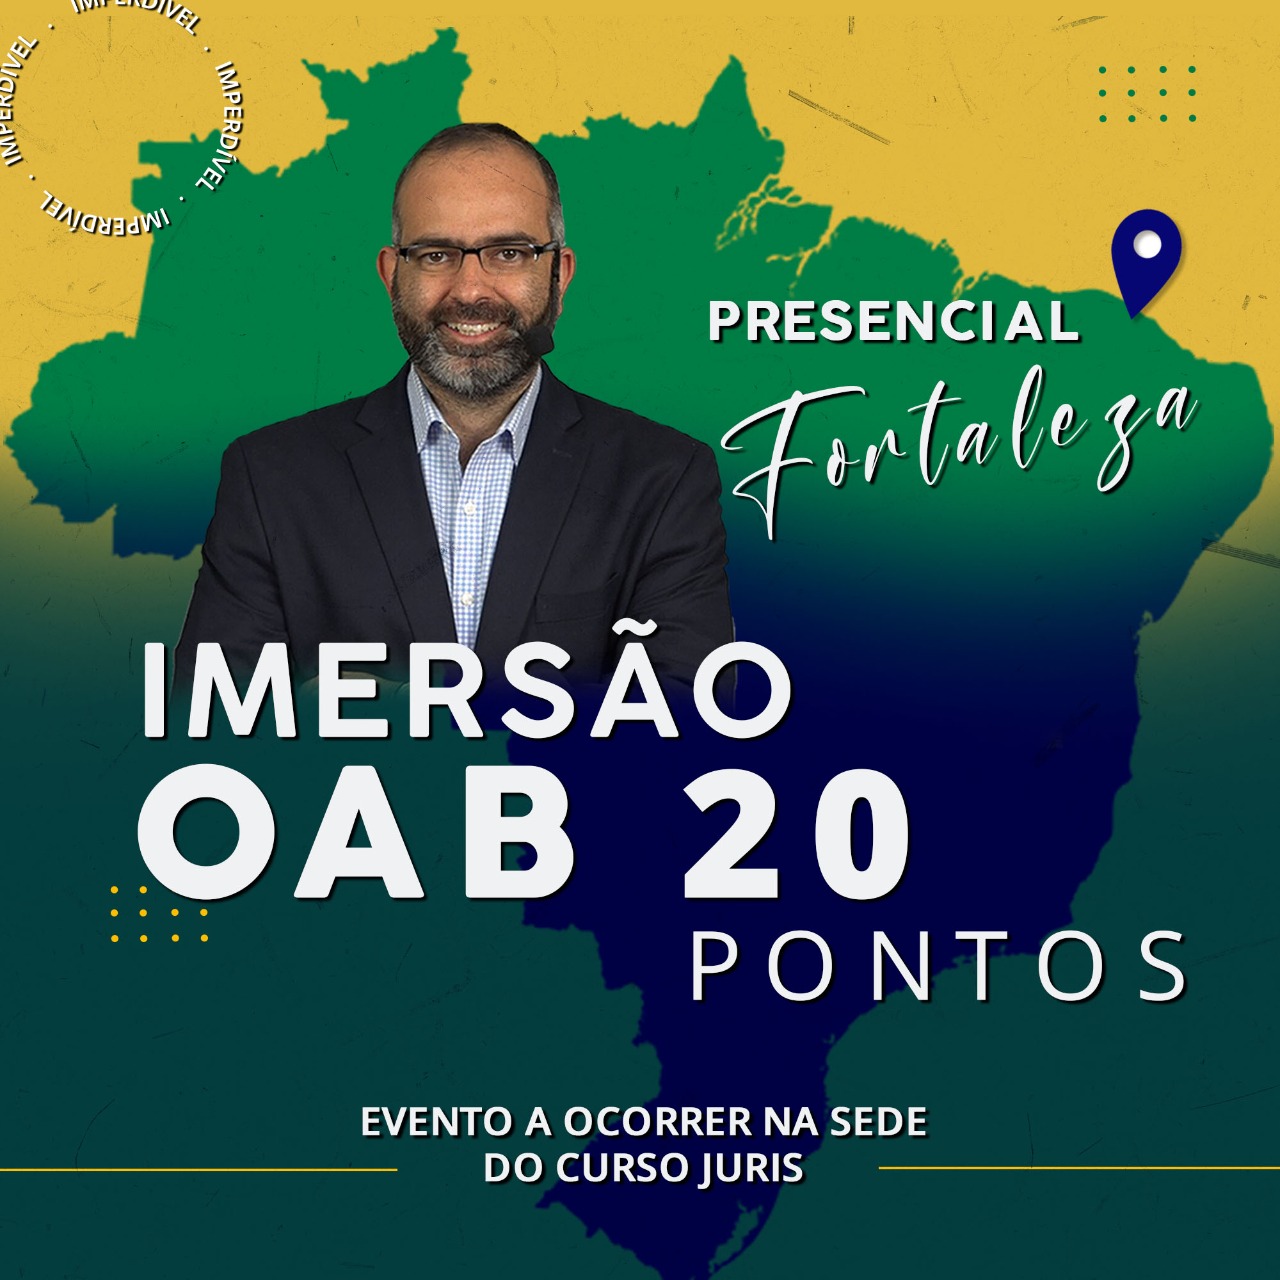 IMERSÃO OAB 20 PONTOS - PRESENCIAL FORTALEZA